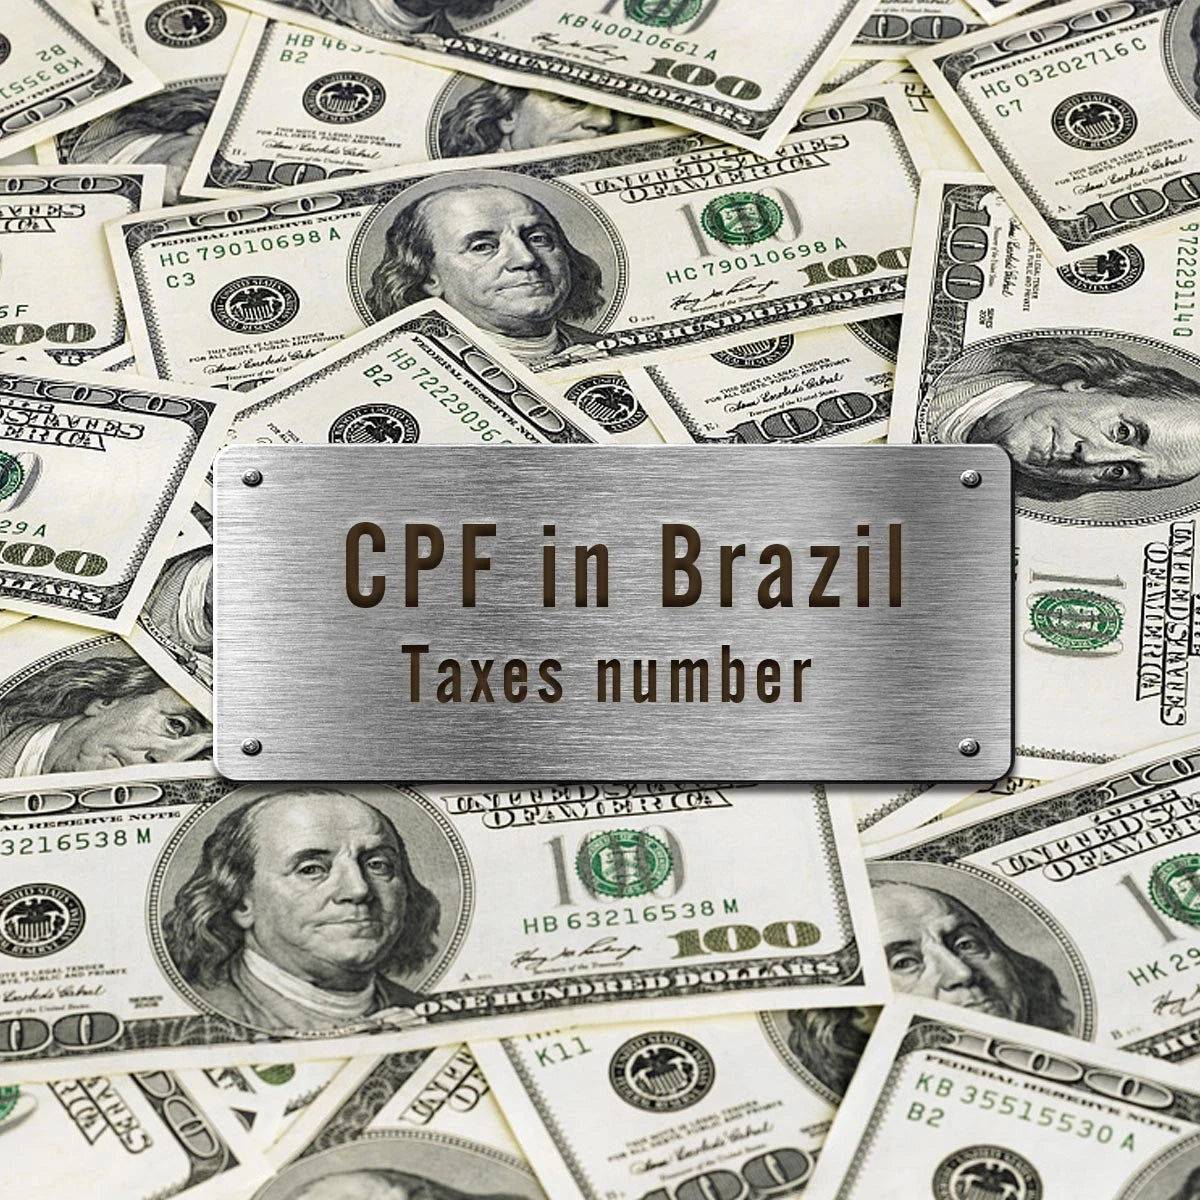 모든 주문(브라질)에는 세금 ID 번호(CPF)가 필요합니다.